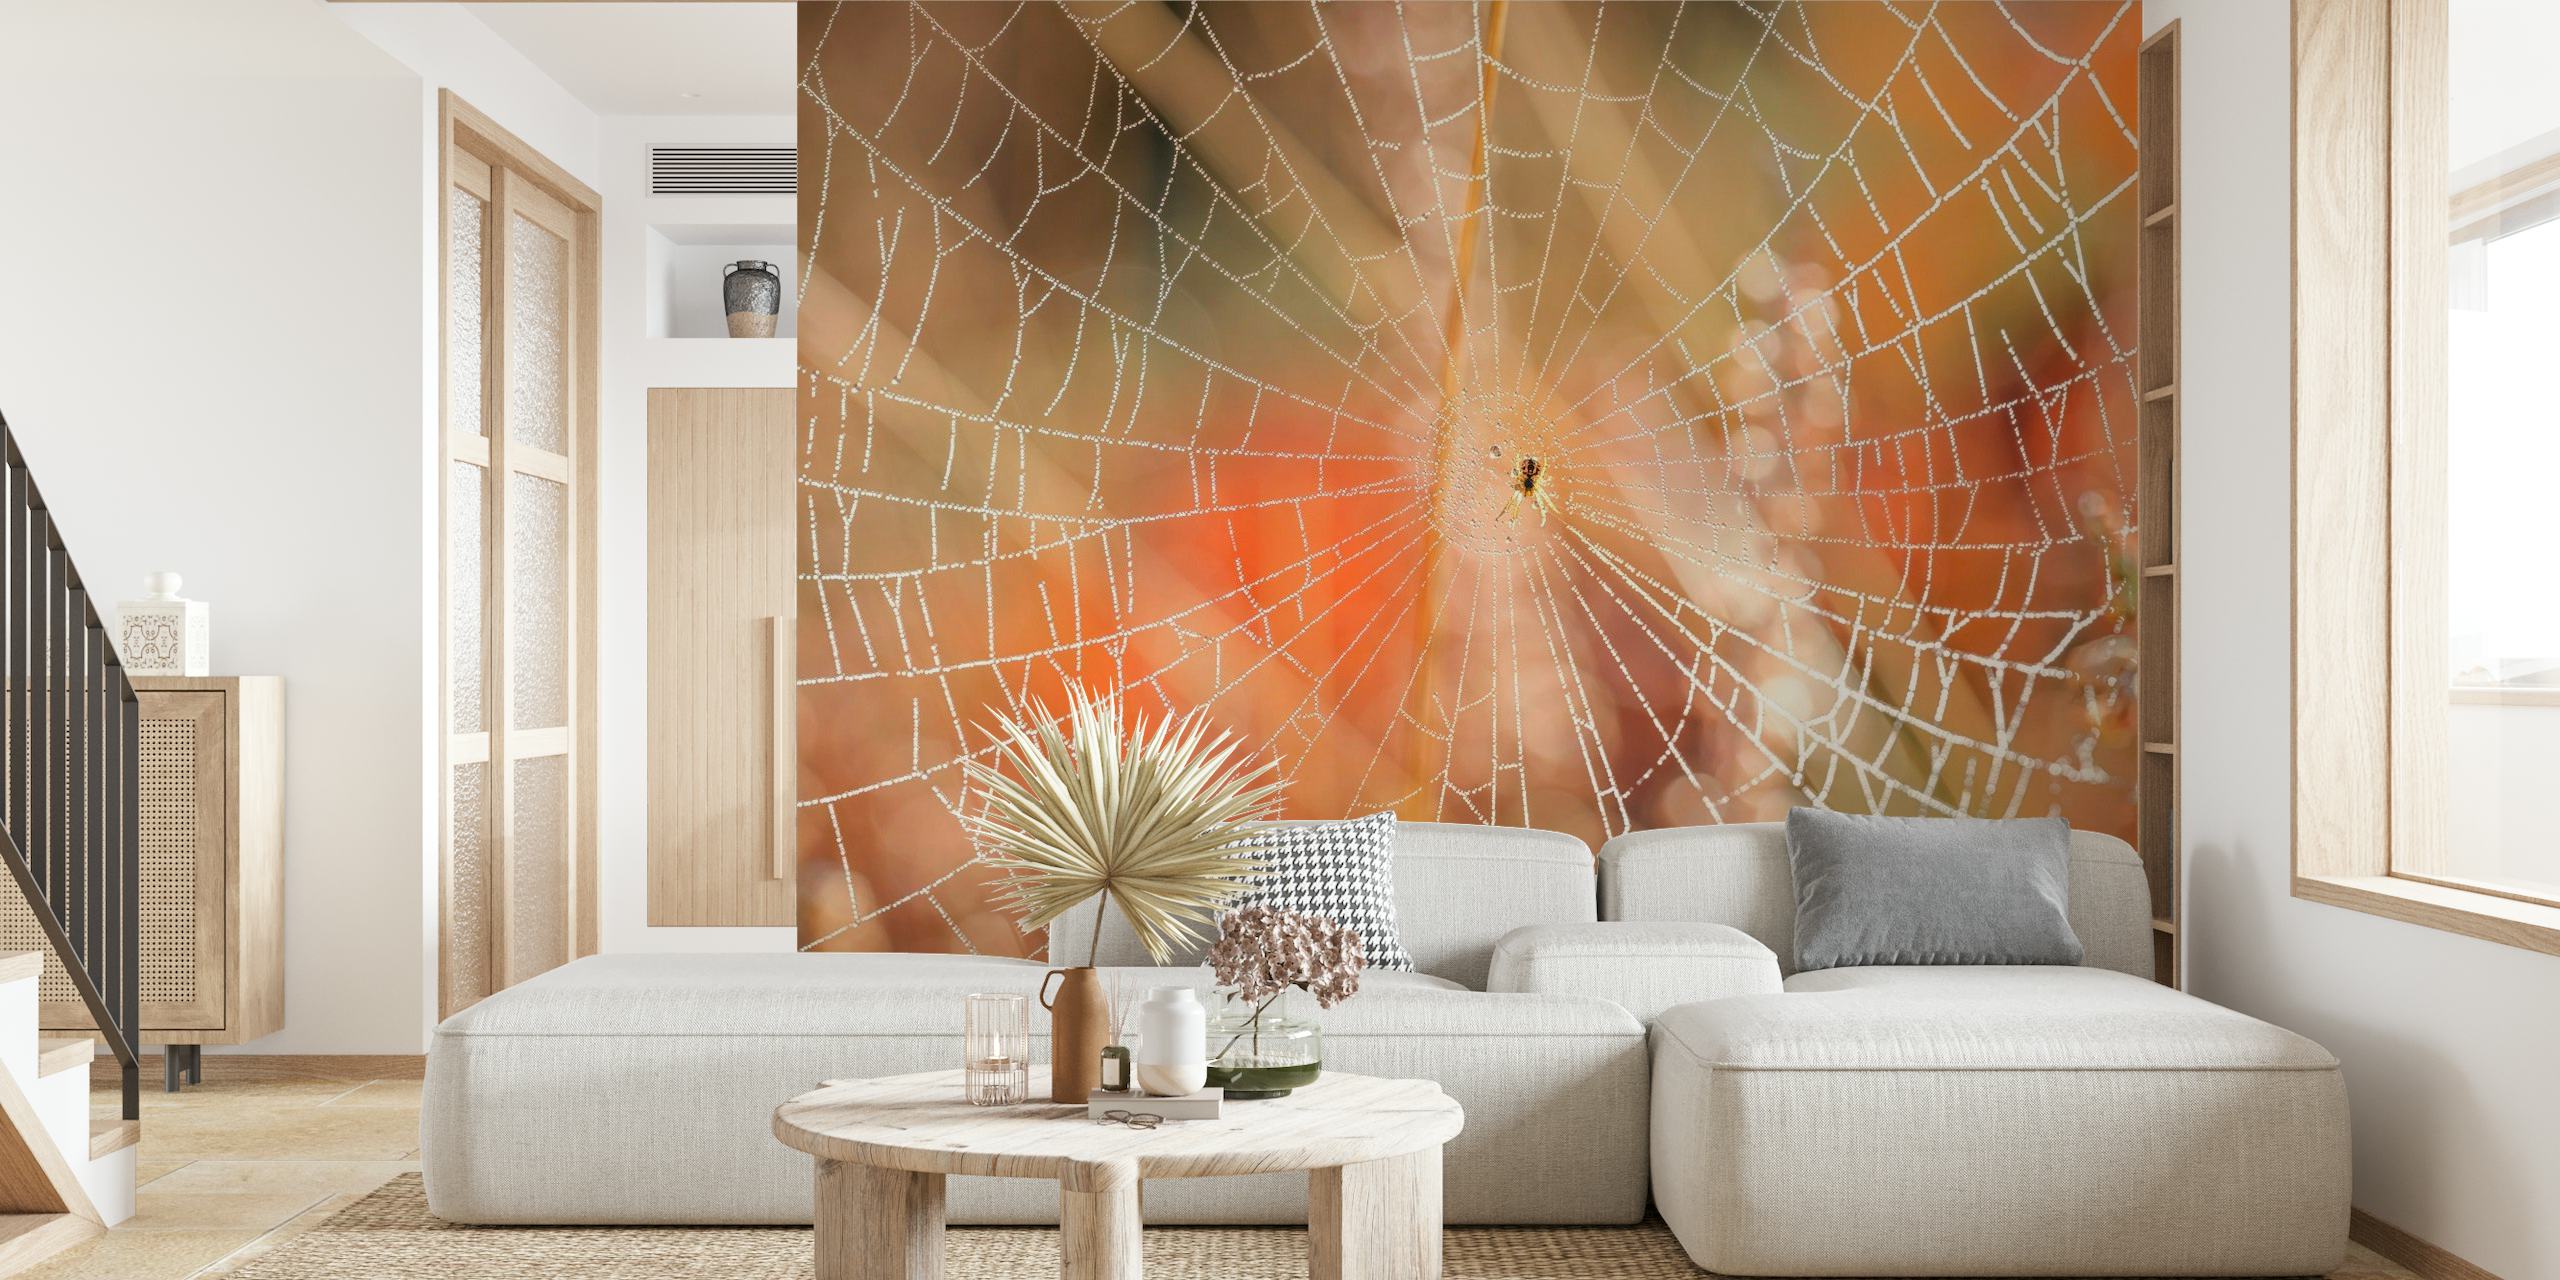 Fotomural vinílico de parede intrincado de teia de aranha com orvalho da manhã